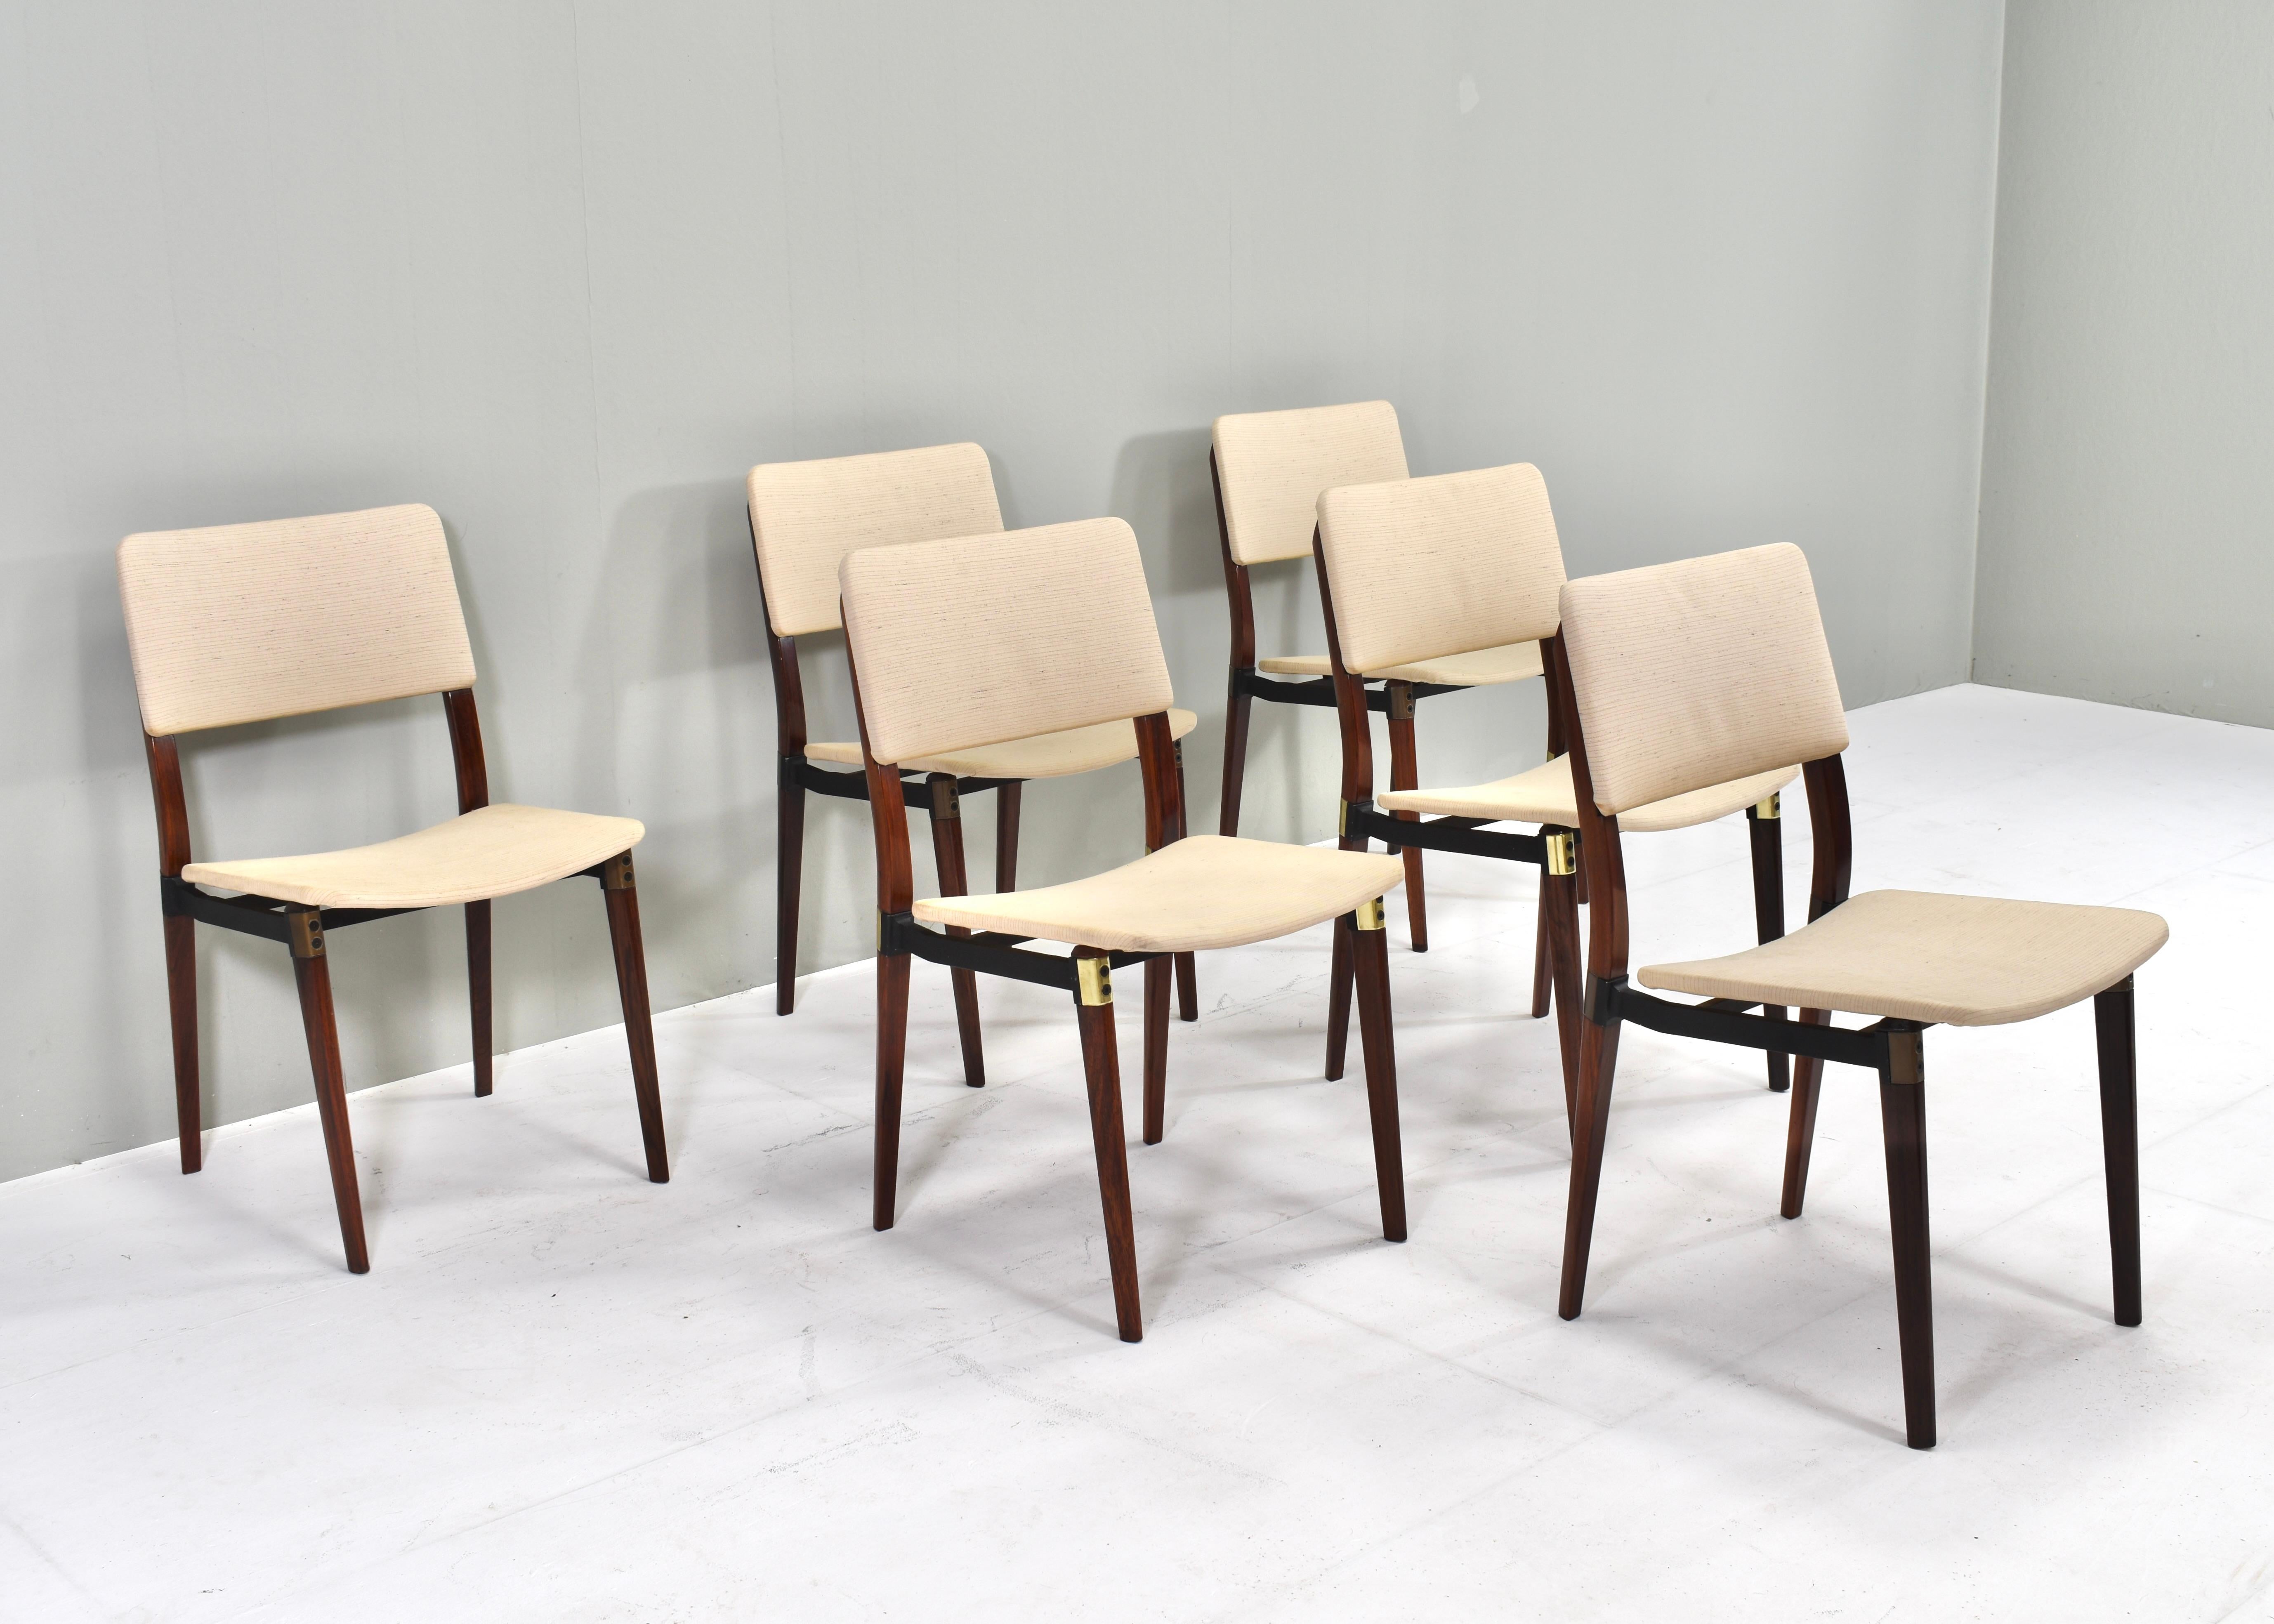 Satz von sechs S82-Esszimmerstühlen von Eugenio Gerli (und Osvaldo Borsani) für Tecno, Italien - um 1960. 
Die Stühle haben noch ihre Originalpolsterung und sind in gutem Zustand mit normalen Alters- und Gebrauchsspuren. Zwei Stühle haben